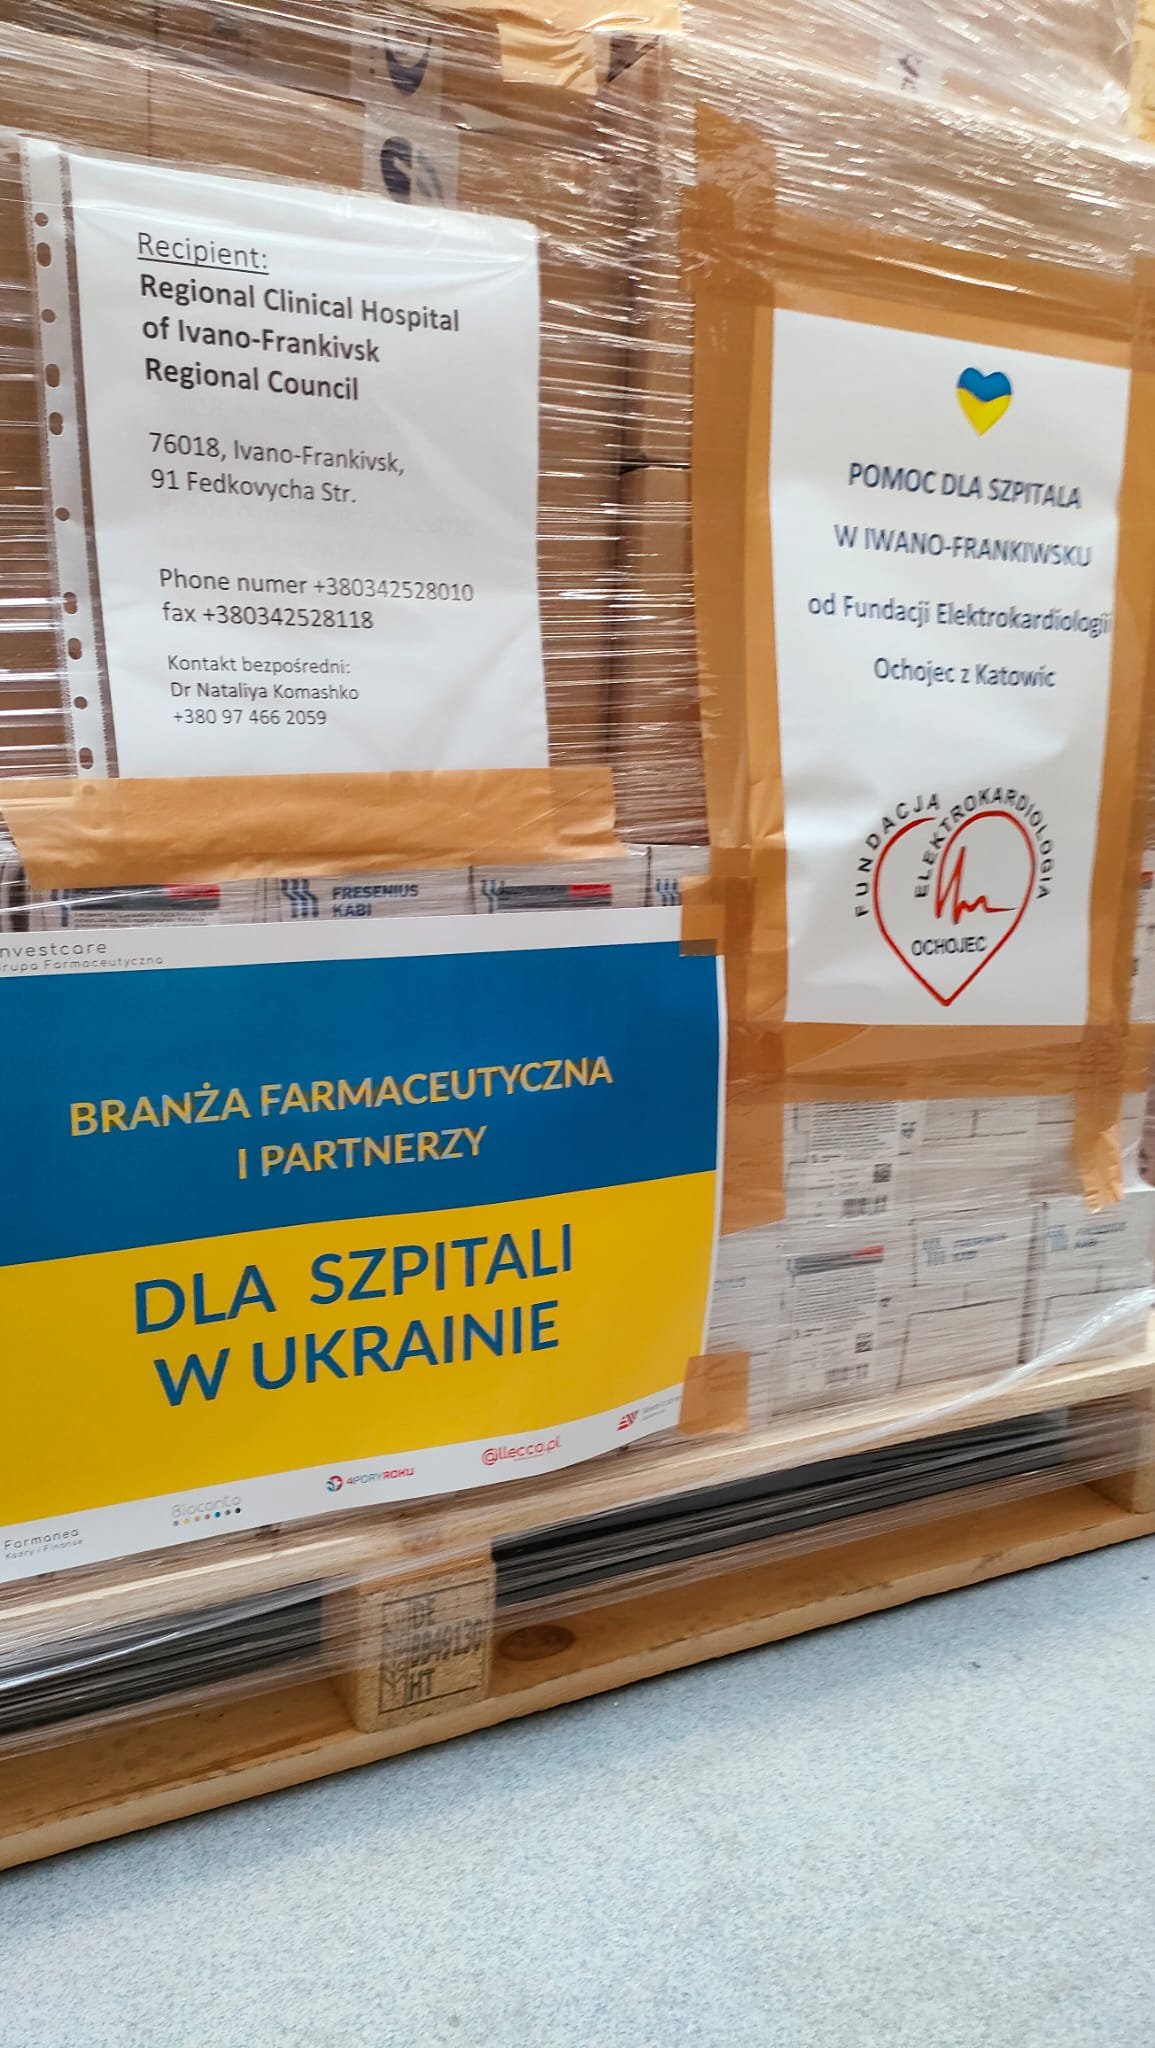 Pomoc medyczna dla Ukrainy!